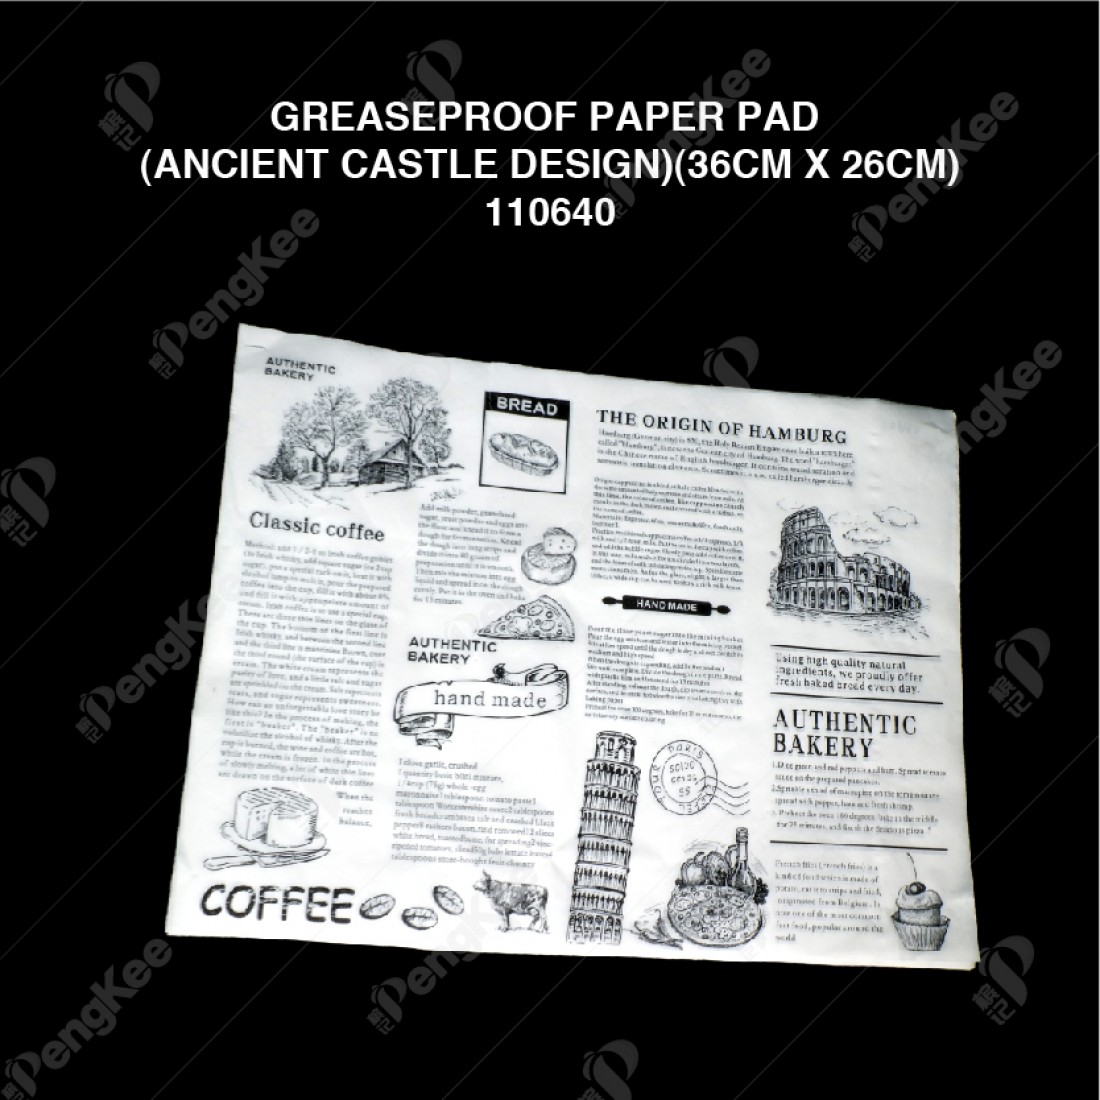 GREASEPROOF PAPER PAD (ANCIENT CASTLE DESIGN) ( 36CM X 26CM ) (500'S/PKT)